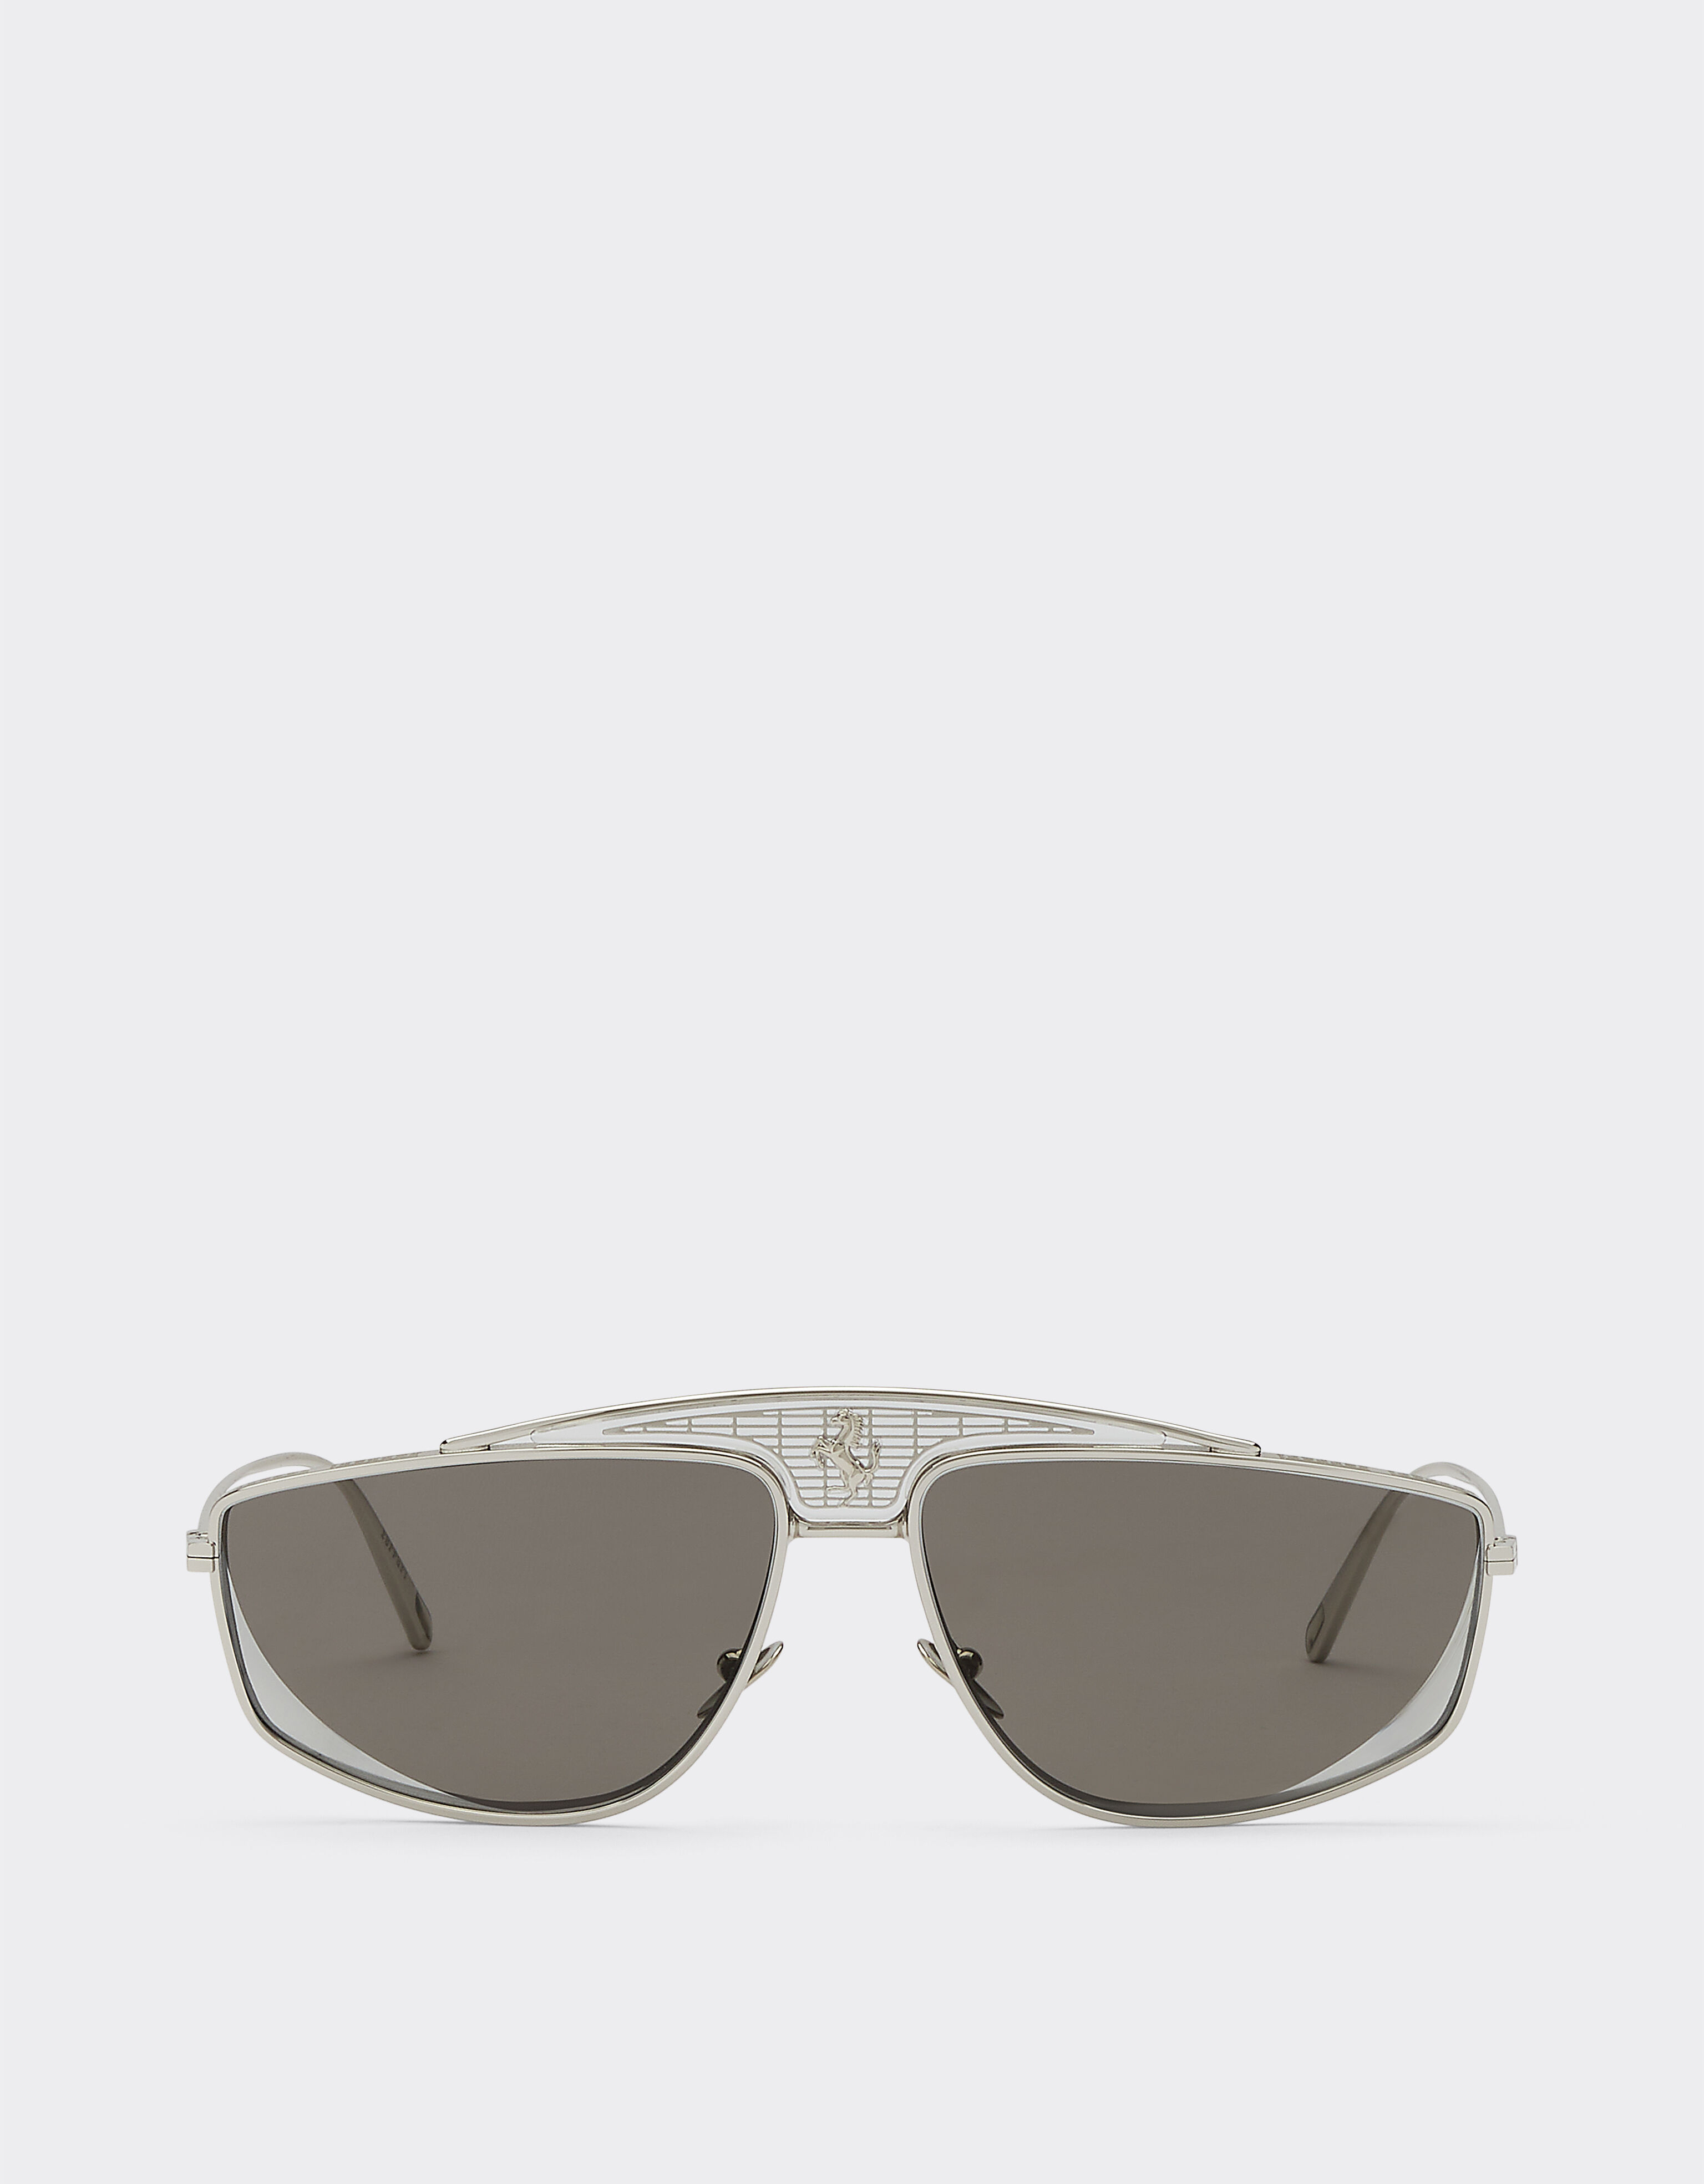 Ferrari Ferrari sunglasses with silver mirrored lenses Gold F0411f